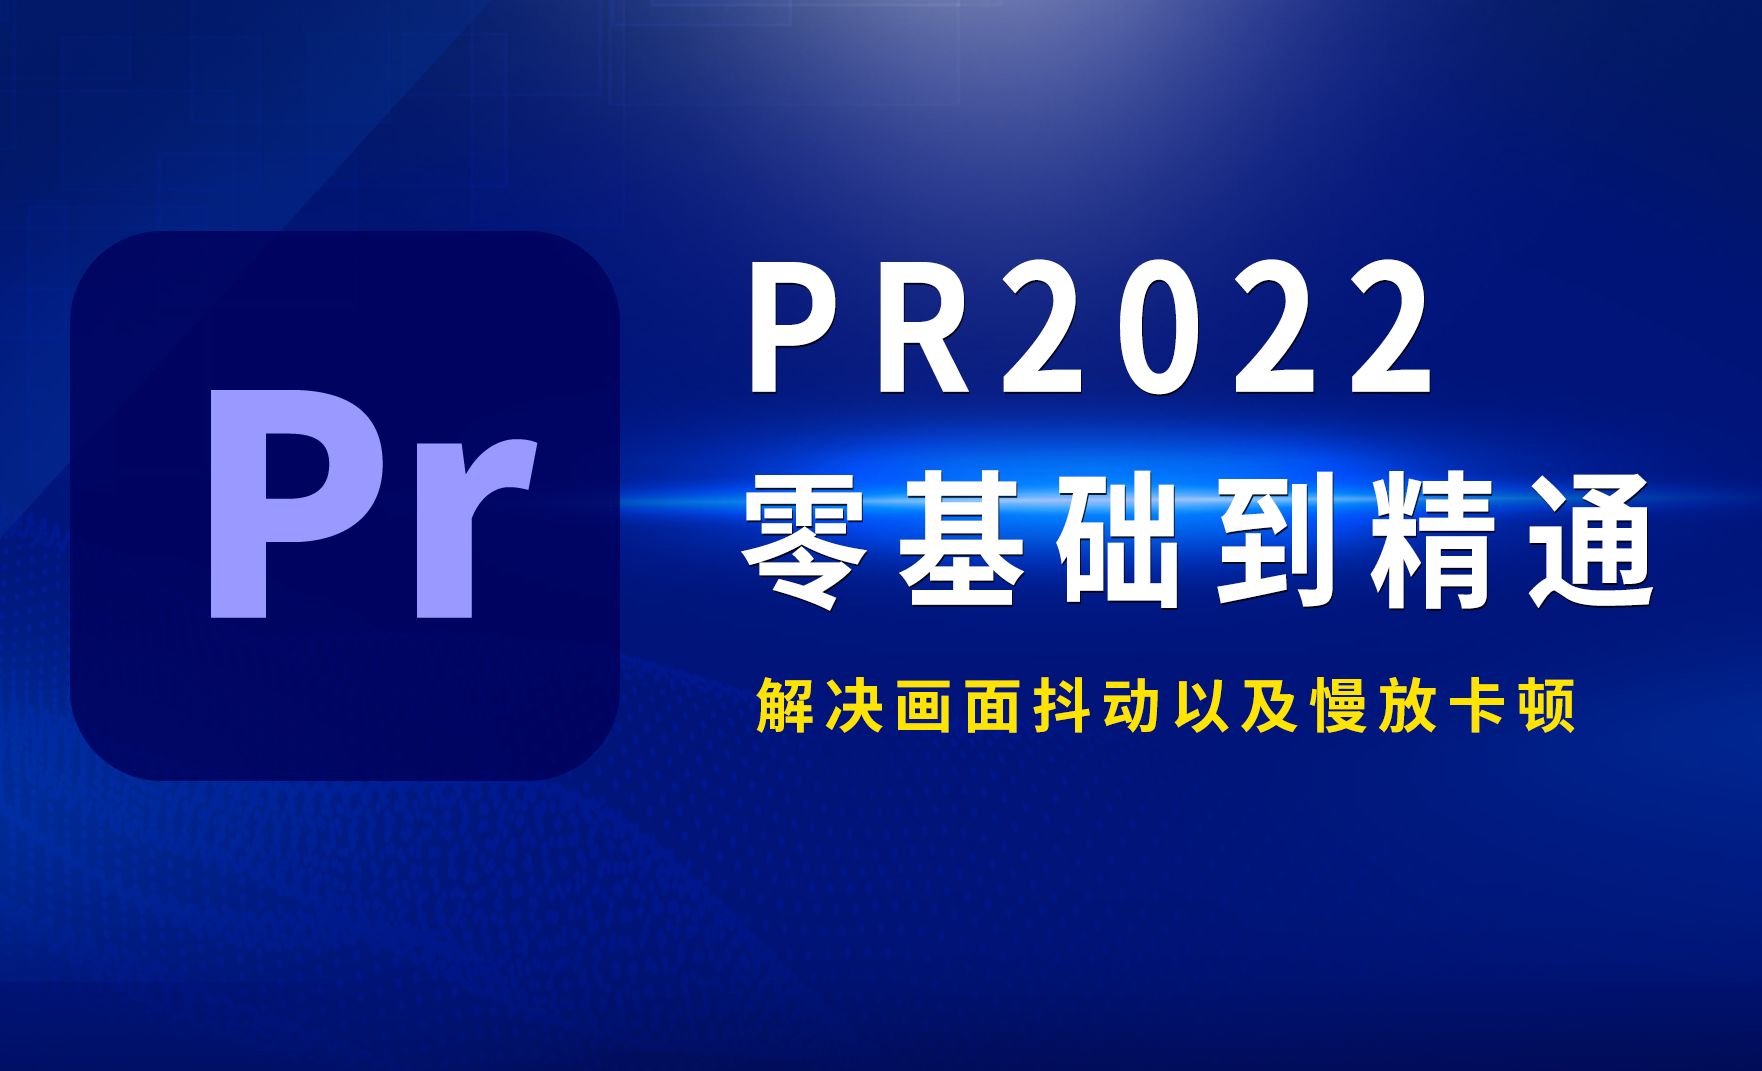 PR2022-处理抖动画面以及慢放卡顿